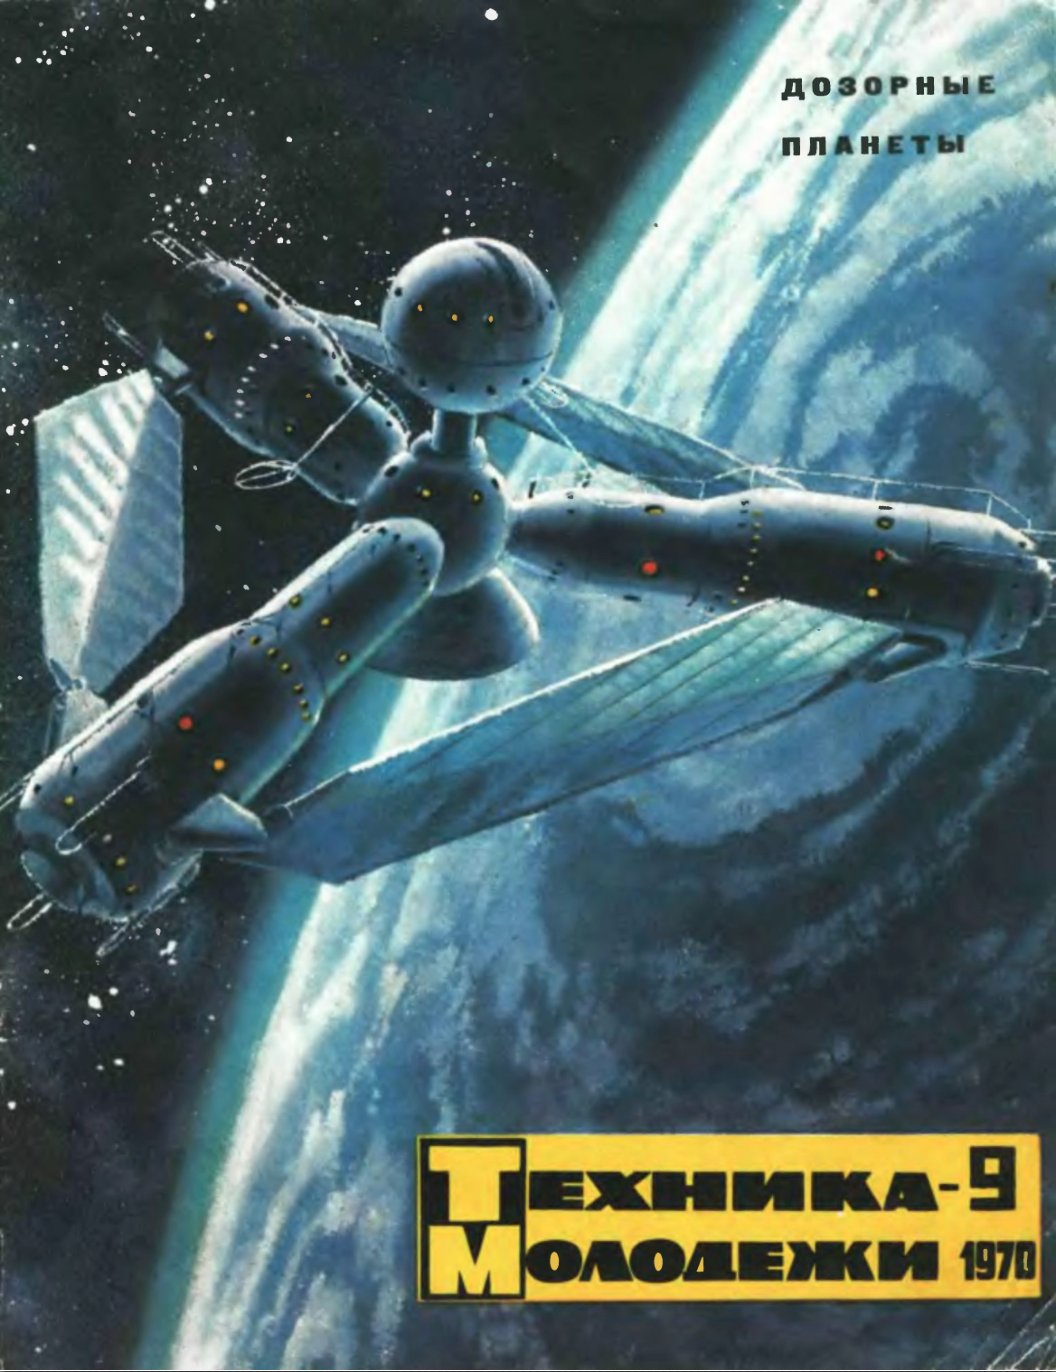 Cover of Tekhnika Molodezhi (Technology for Youth) Soviet magazine, 1970.jpg